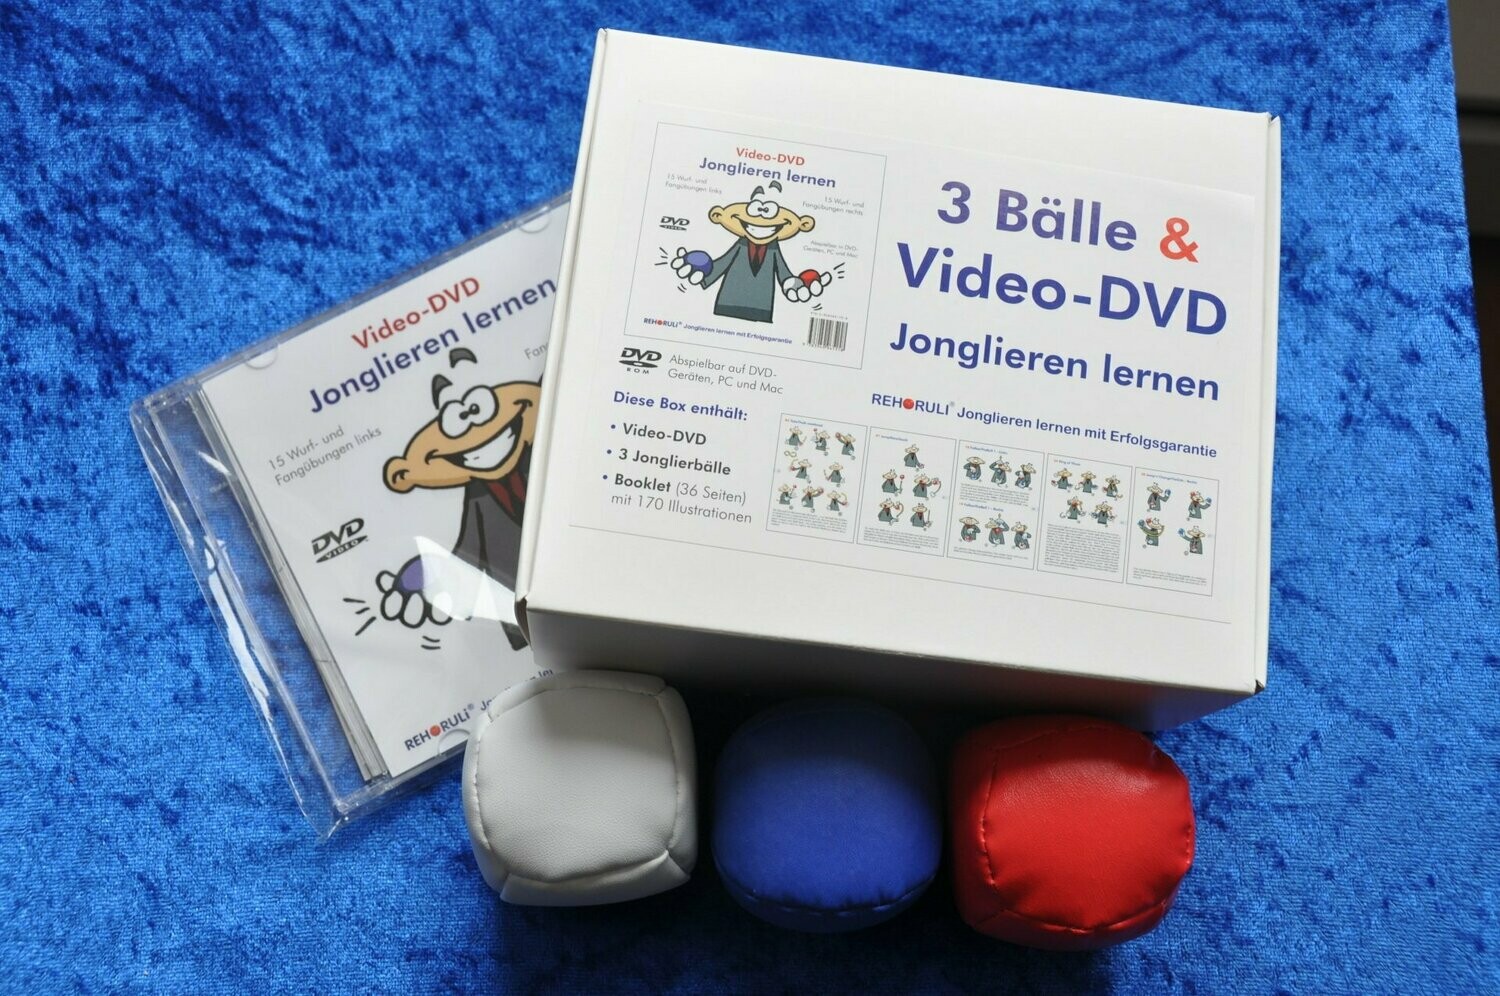 Jonglierball-Set (Größe M+) mit Video-DVD "Jonglieren lernen" in Geschenkebox - Ballfarben: rot/weiß/blau